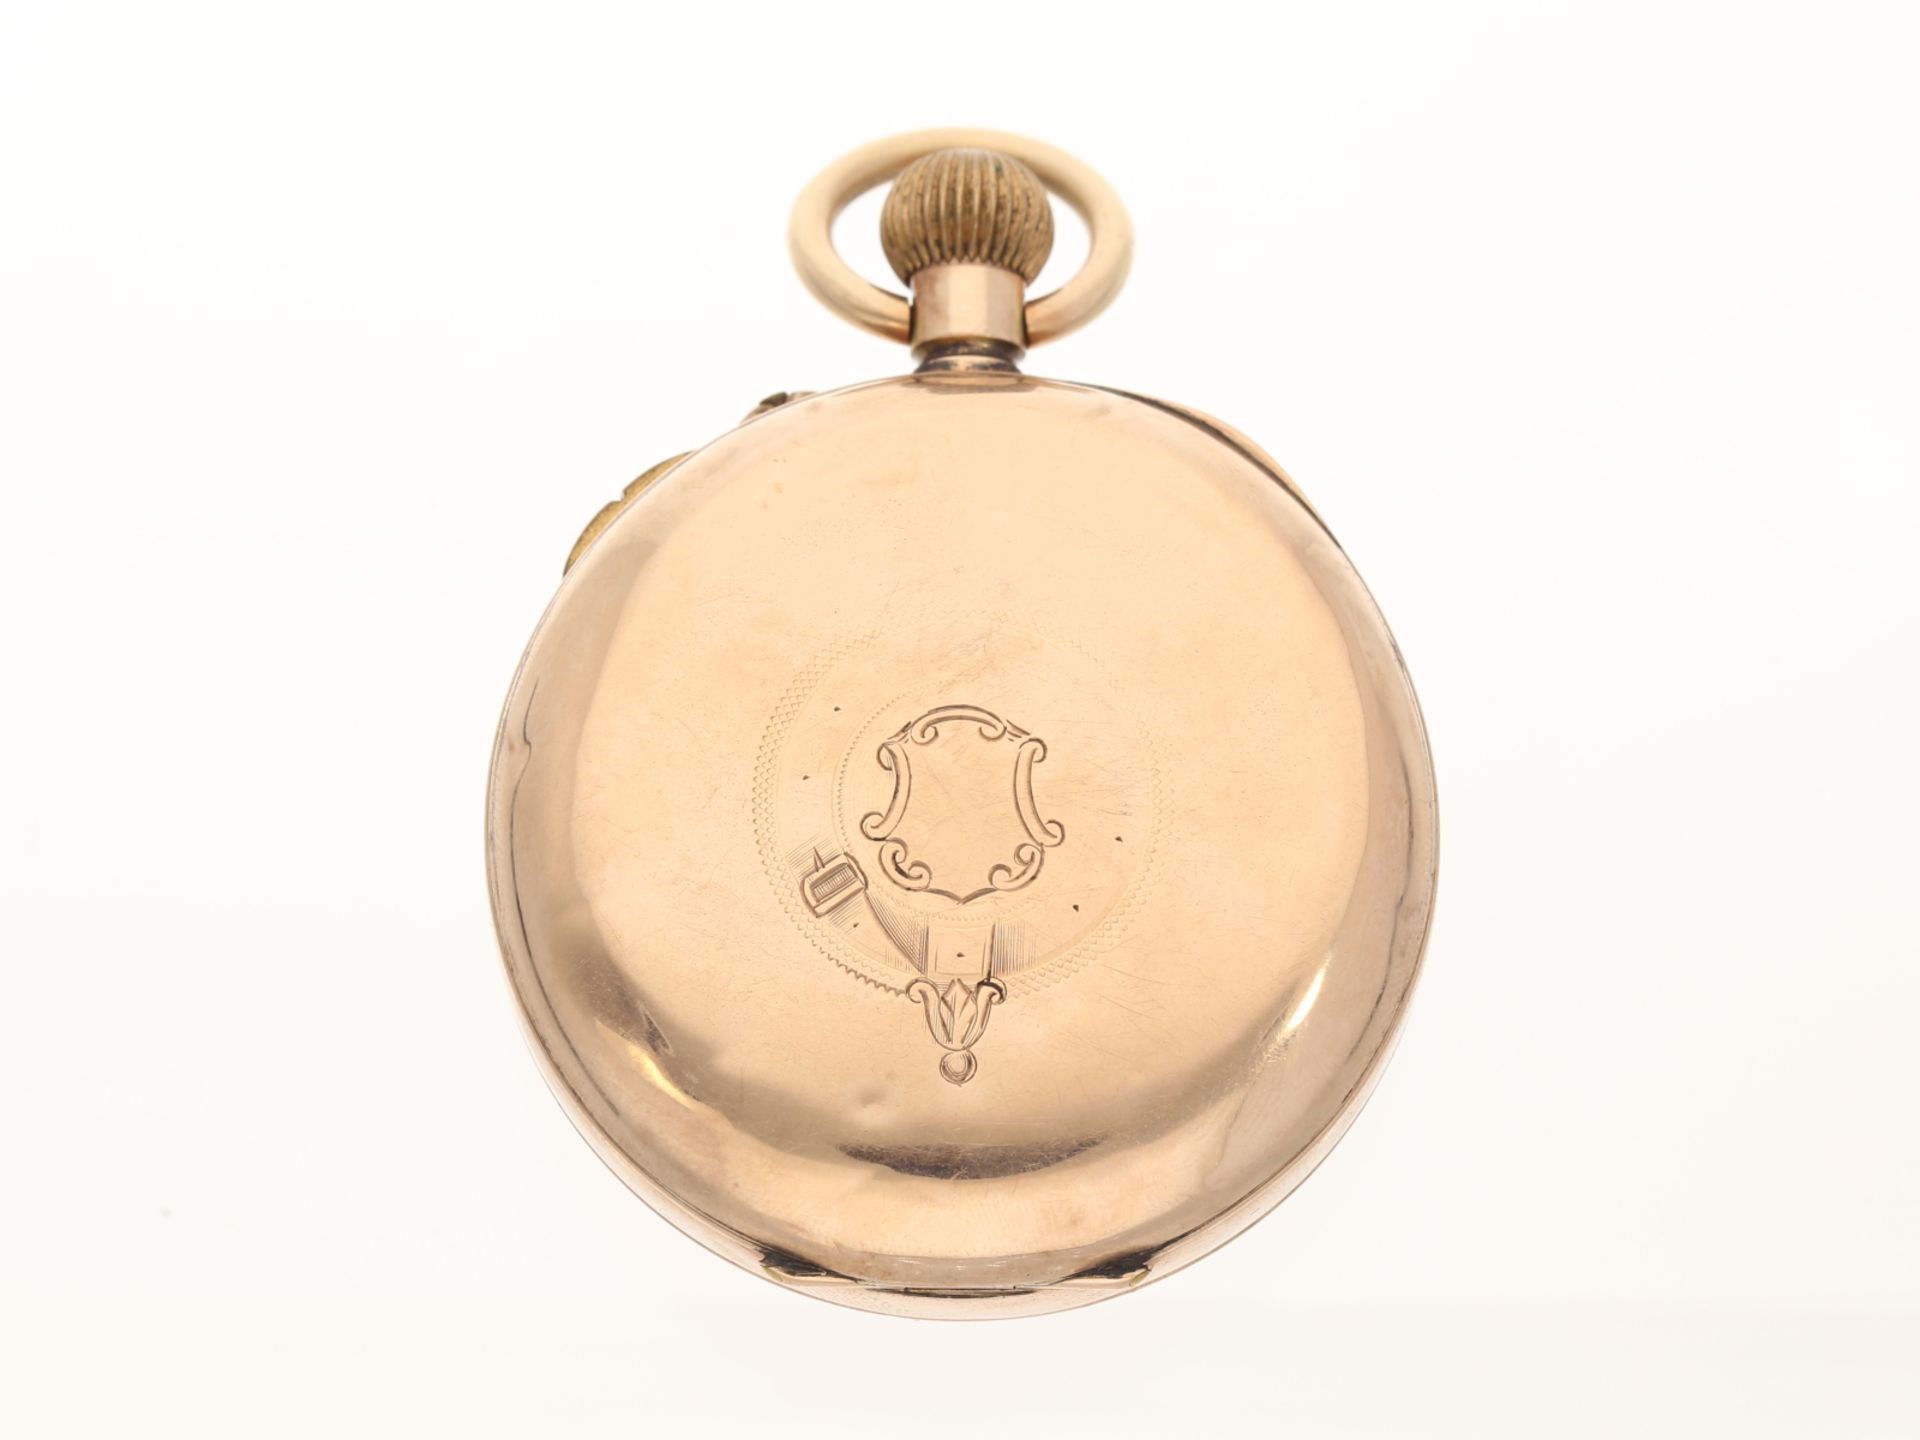 Taschenuhr: Englische 9K Gold Doctor's watch mit ausgefallener vergoldeter Uhrenkette, ca. 1880 - Bild 3 aus 6